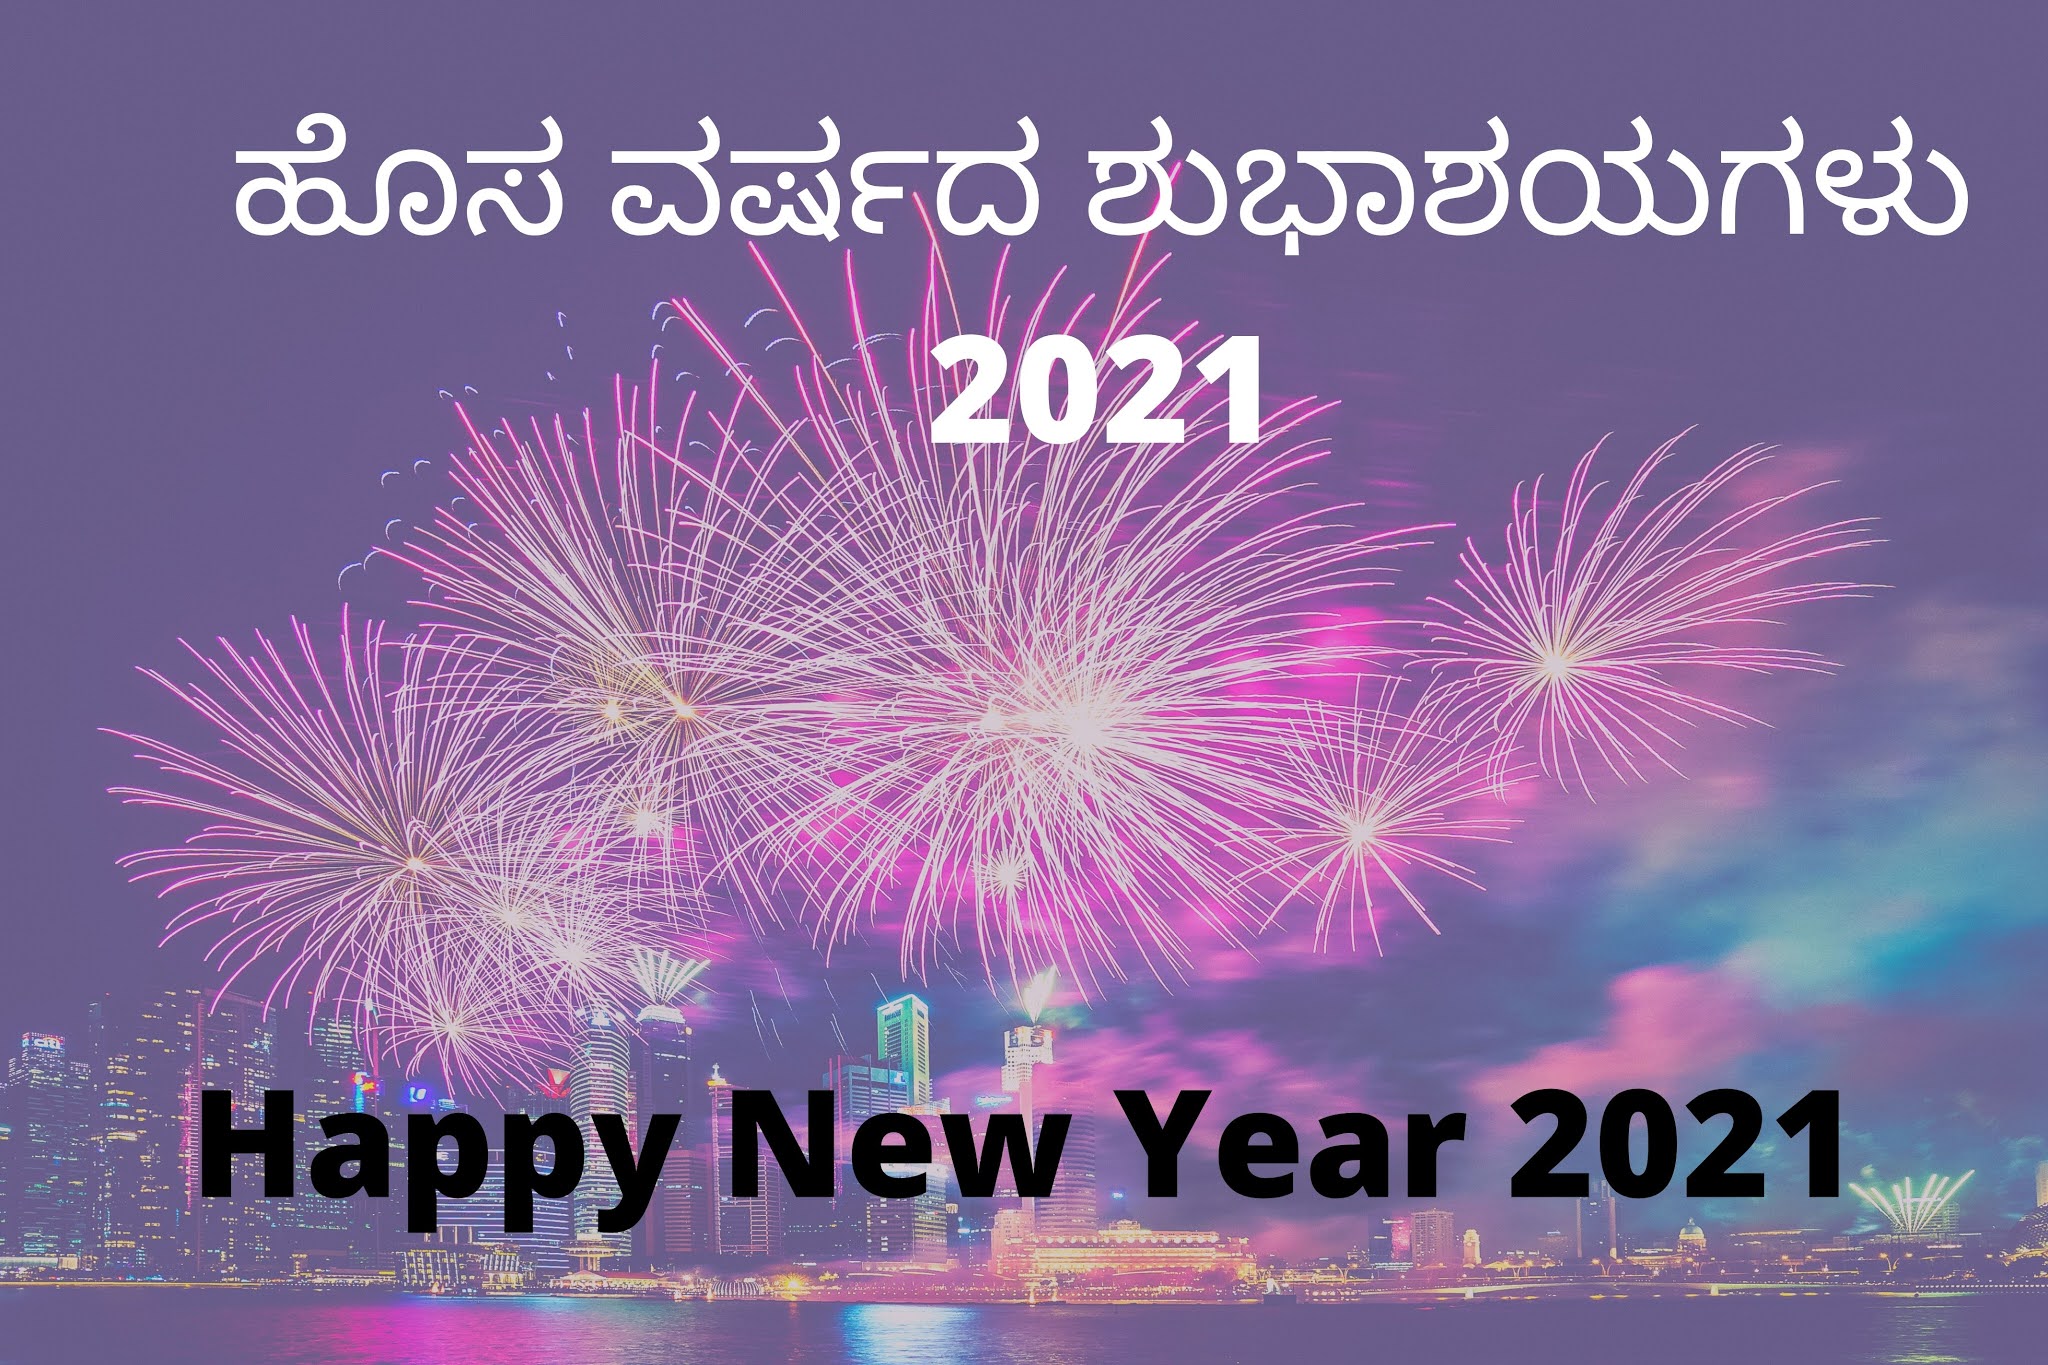 100+ Happy New Year Wishes In Kannada ಕನ್ನಡದಲ್ಲಿ ಹೊಸ ವರ್ಷದ ಶುಭಾಶಯಗಳು